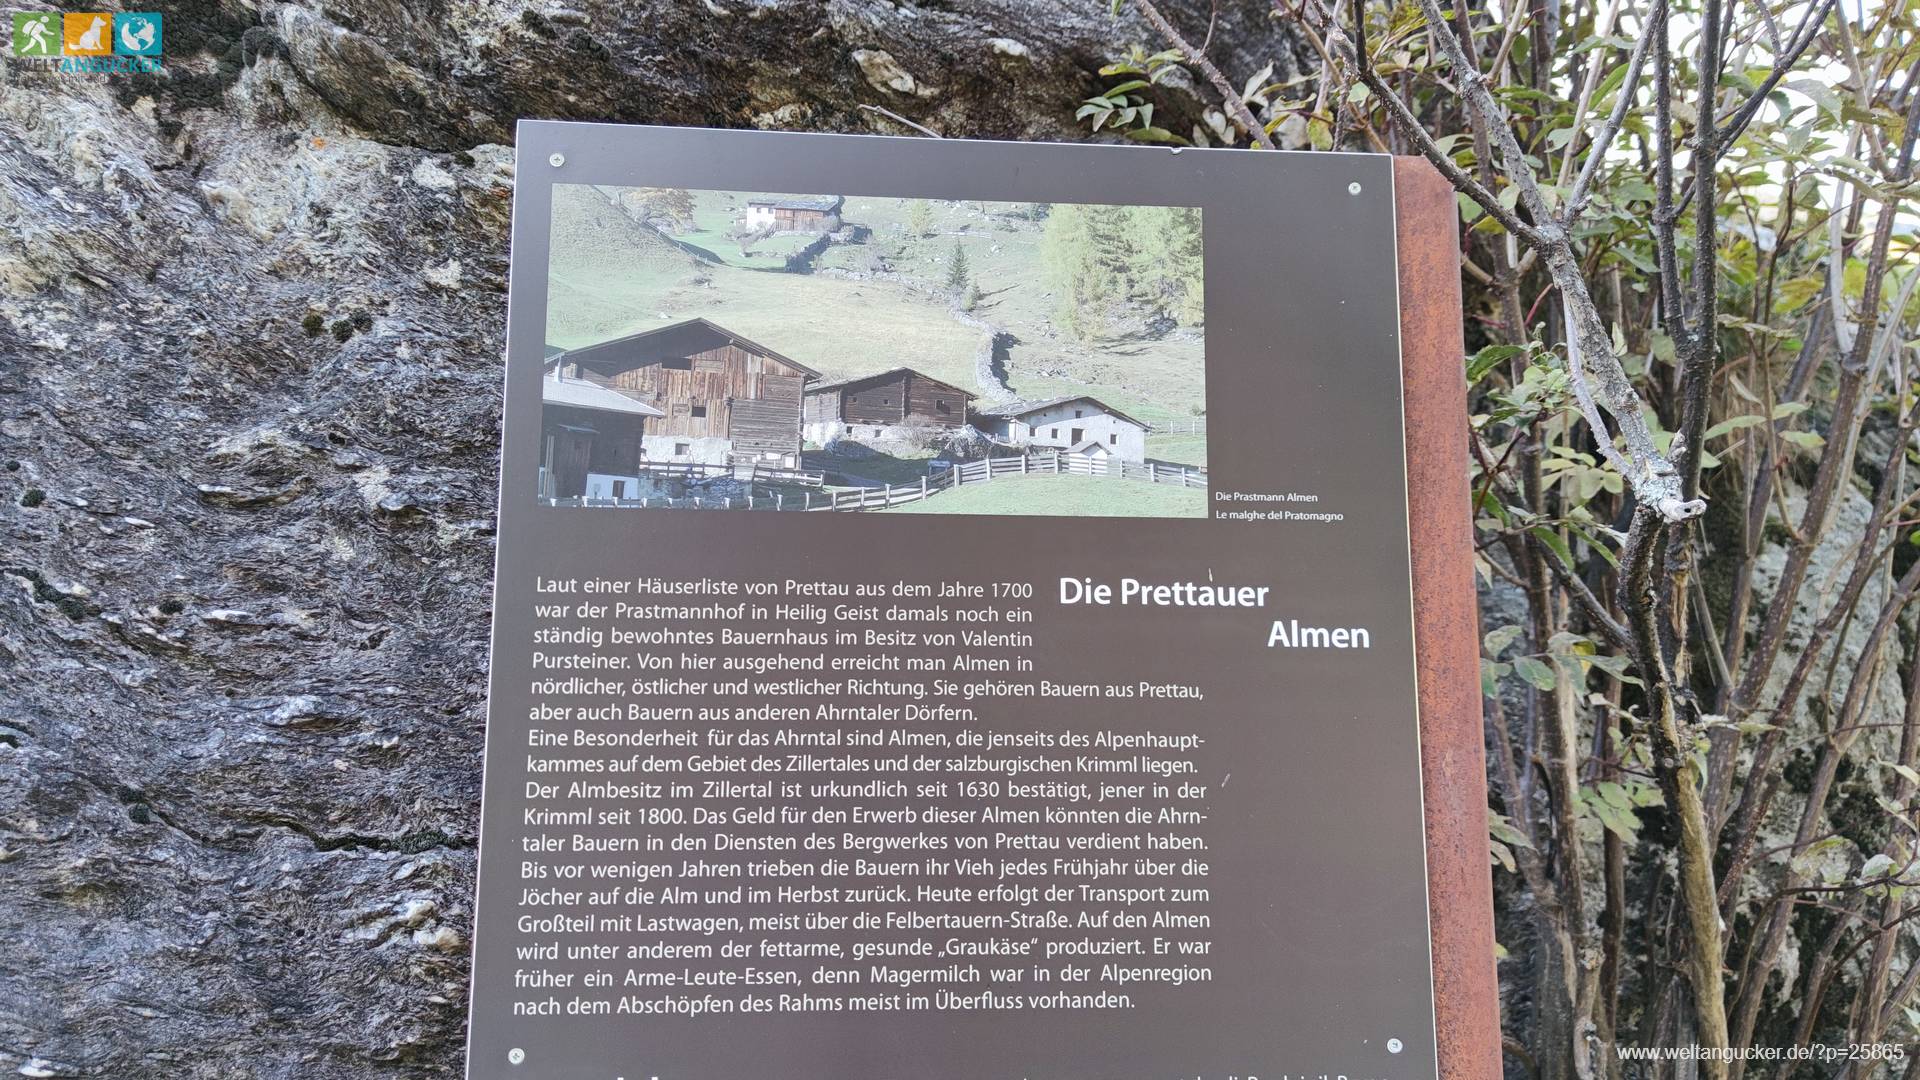 Kasern: Infotafel zu den Prettauer Almen im Naturpark Rieserferner-Ahrn